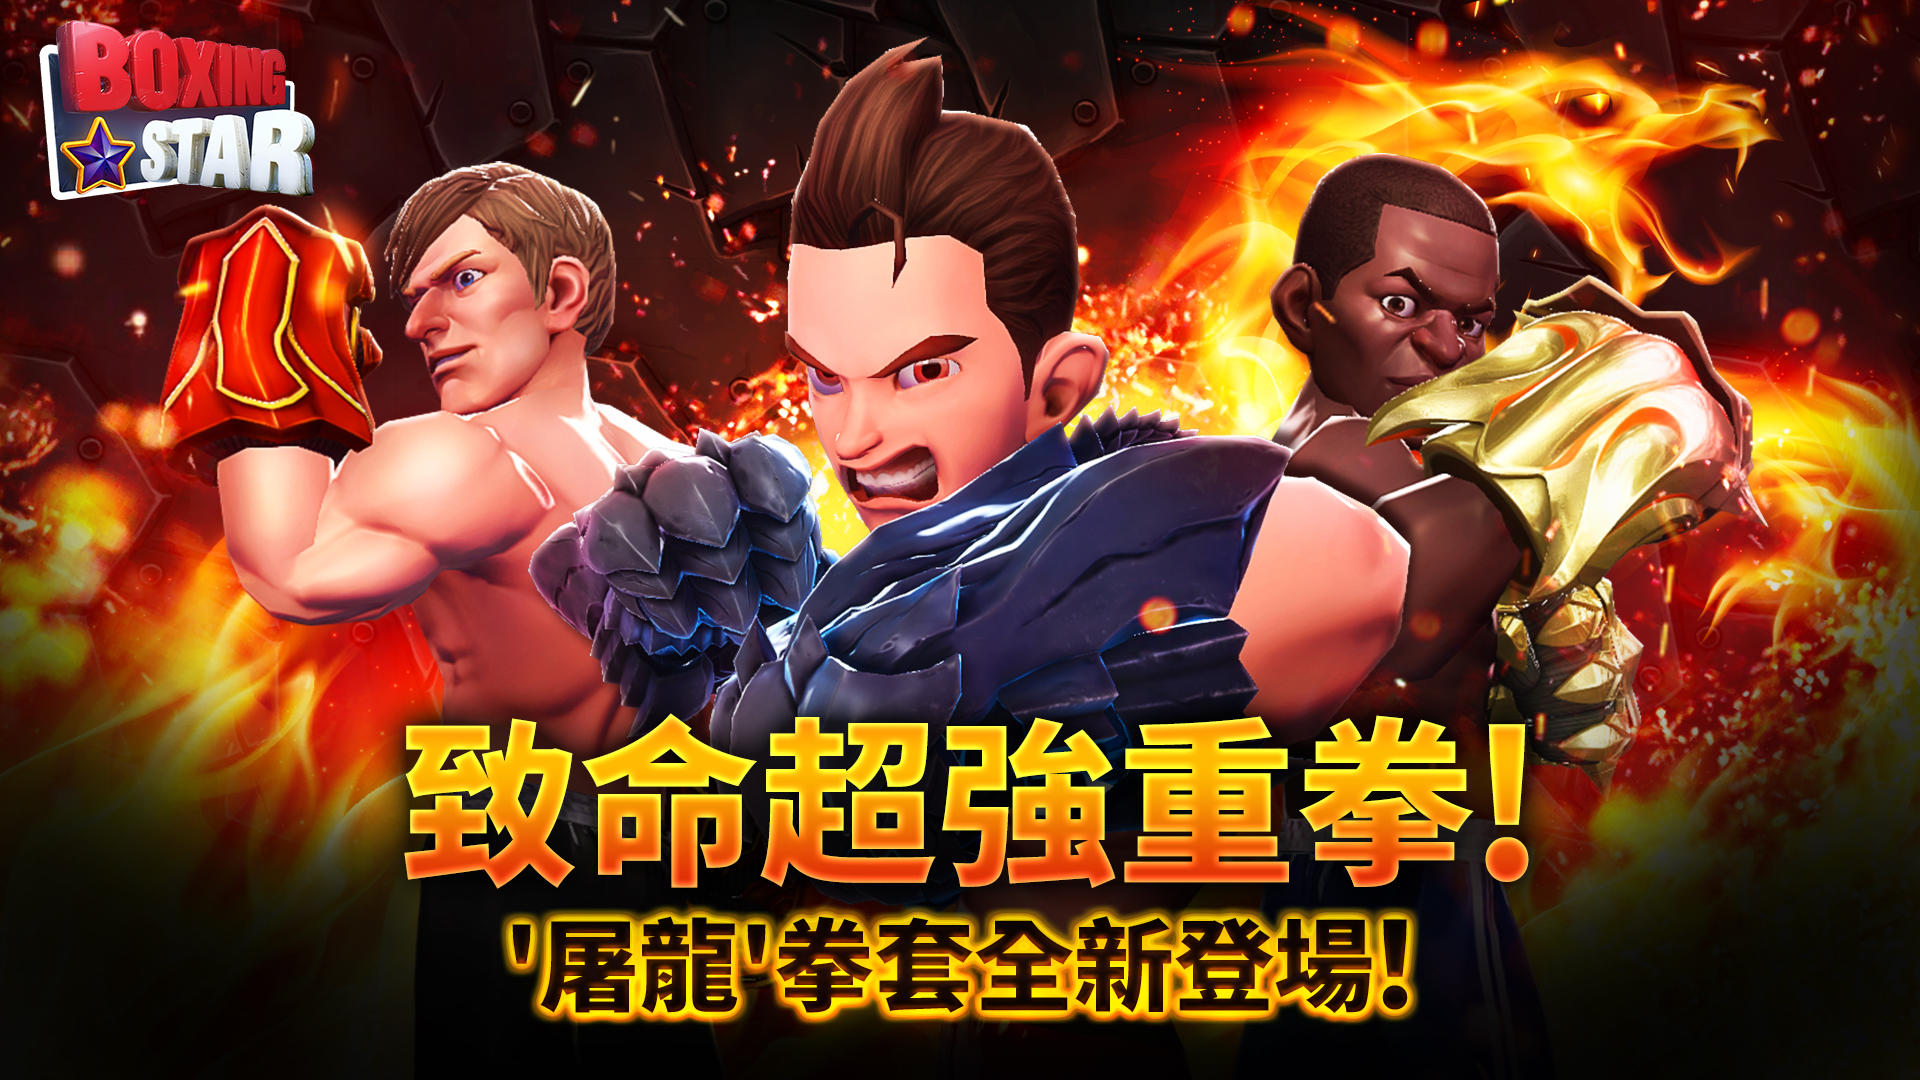 Screenshot 1 of 拳擊之星 Boxing Star 5.8.0